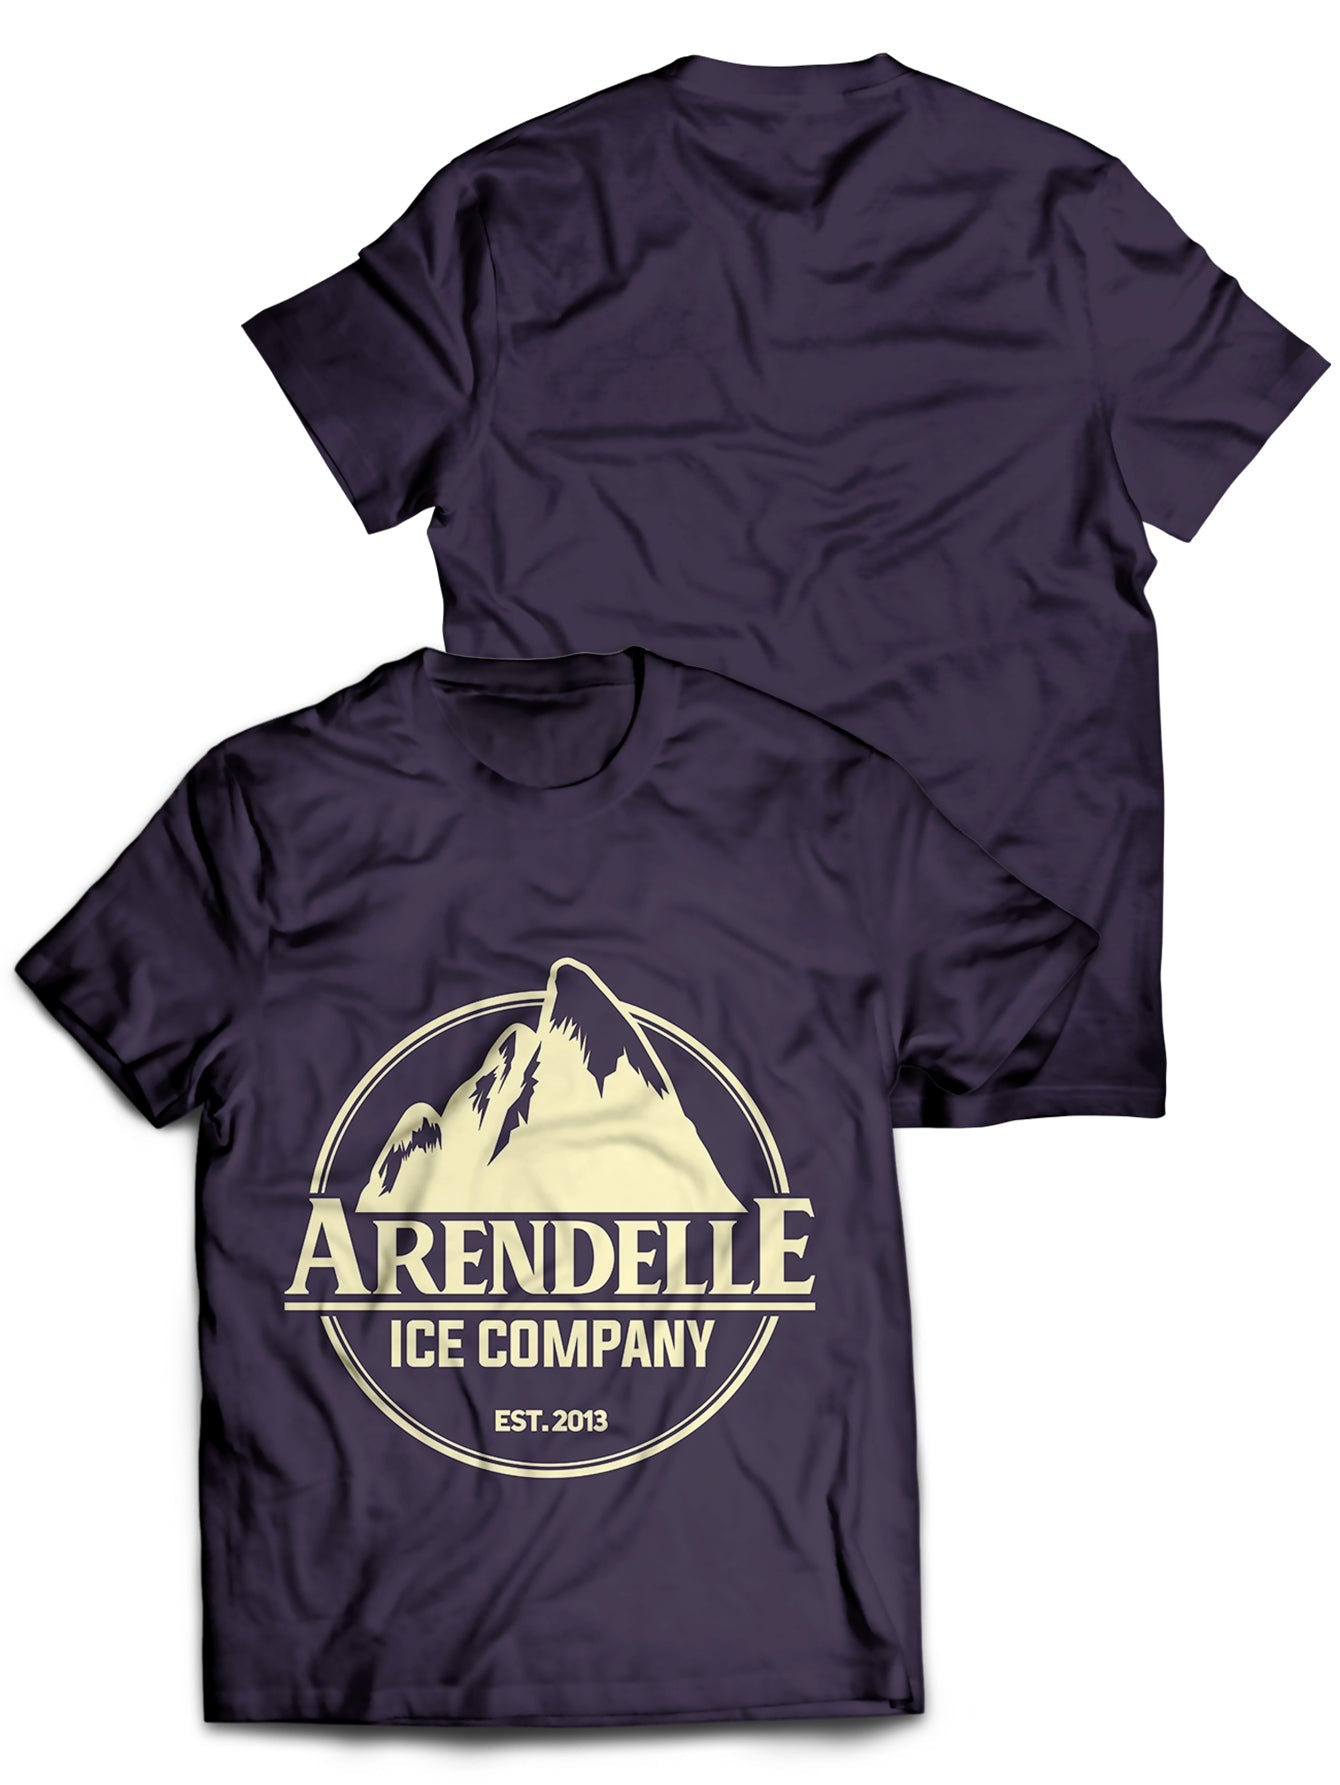 Fandomaniax - Arendelle Ice Co. Unisex T-Shirt